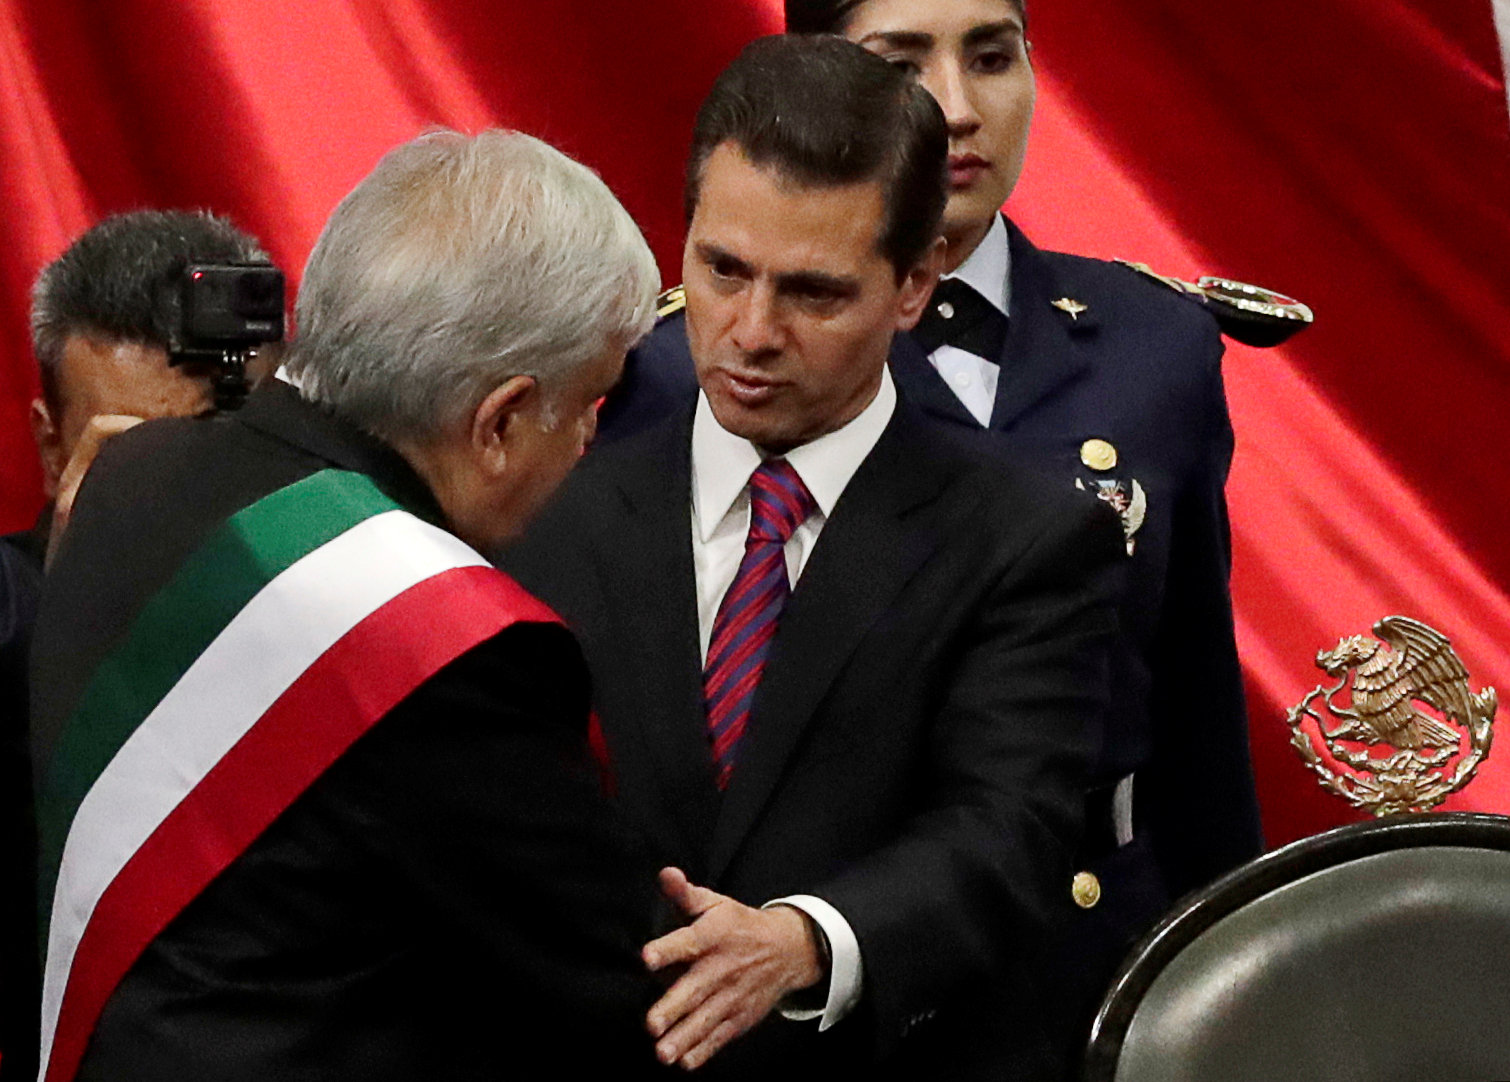 أندريس مانويل لوبيز أوبرادور يتولى منصب الرئيس المكسيكى